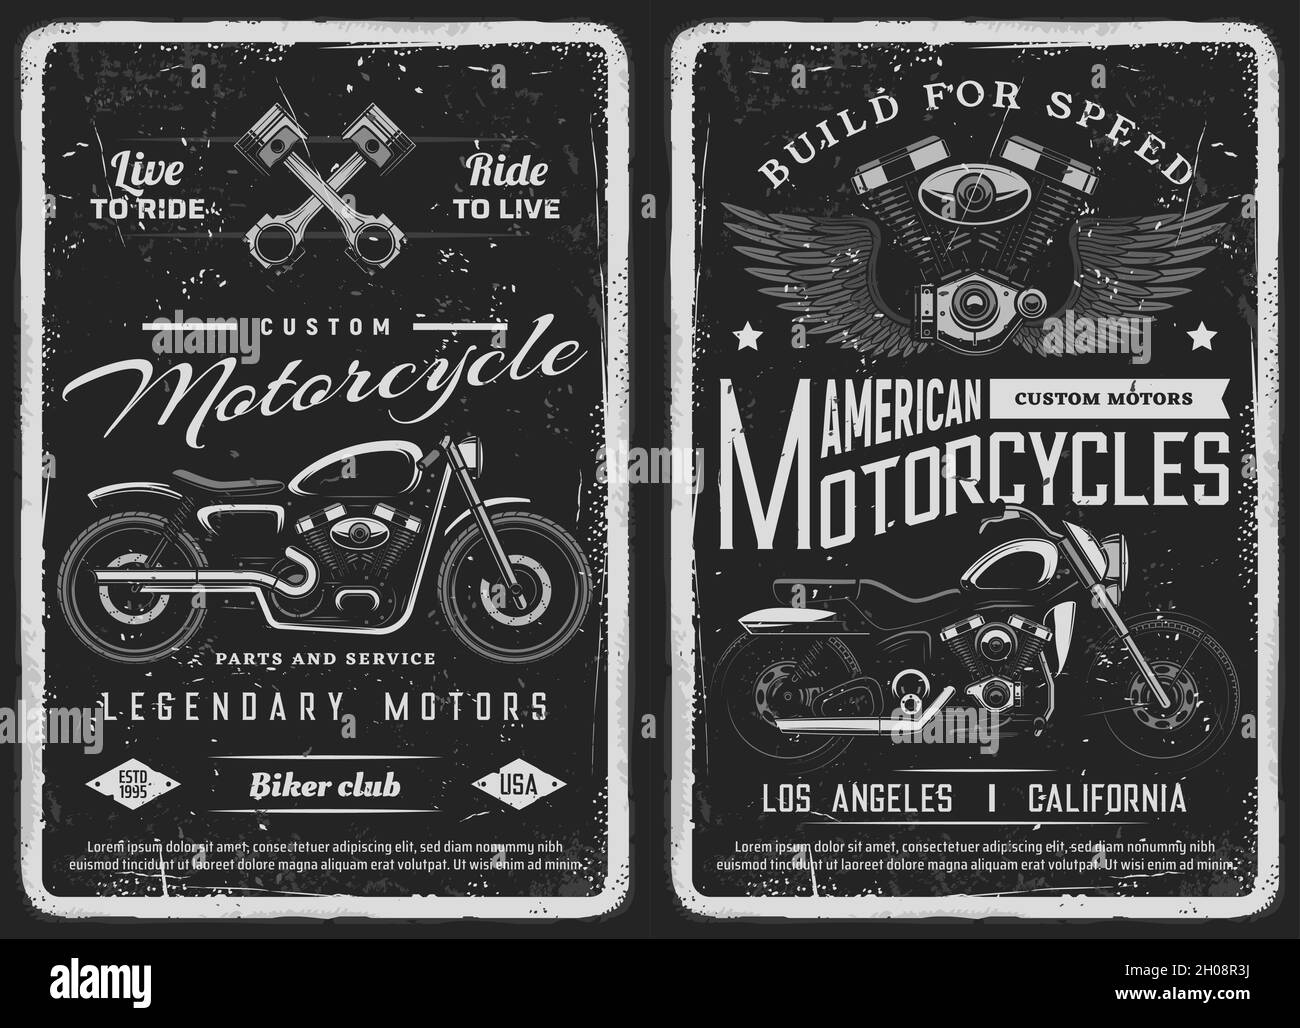 Affiche de motos anciennes Banque d'images noir et blanc - Alamy